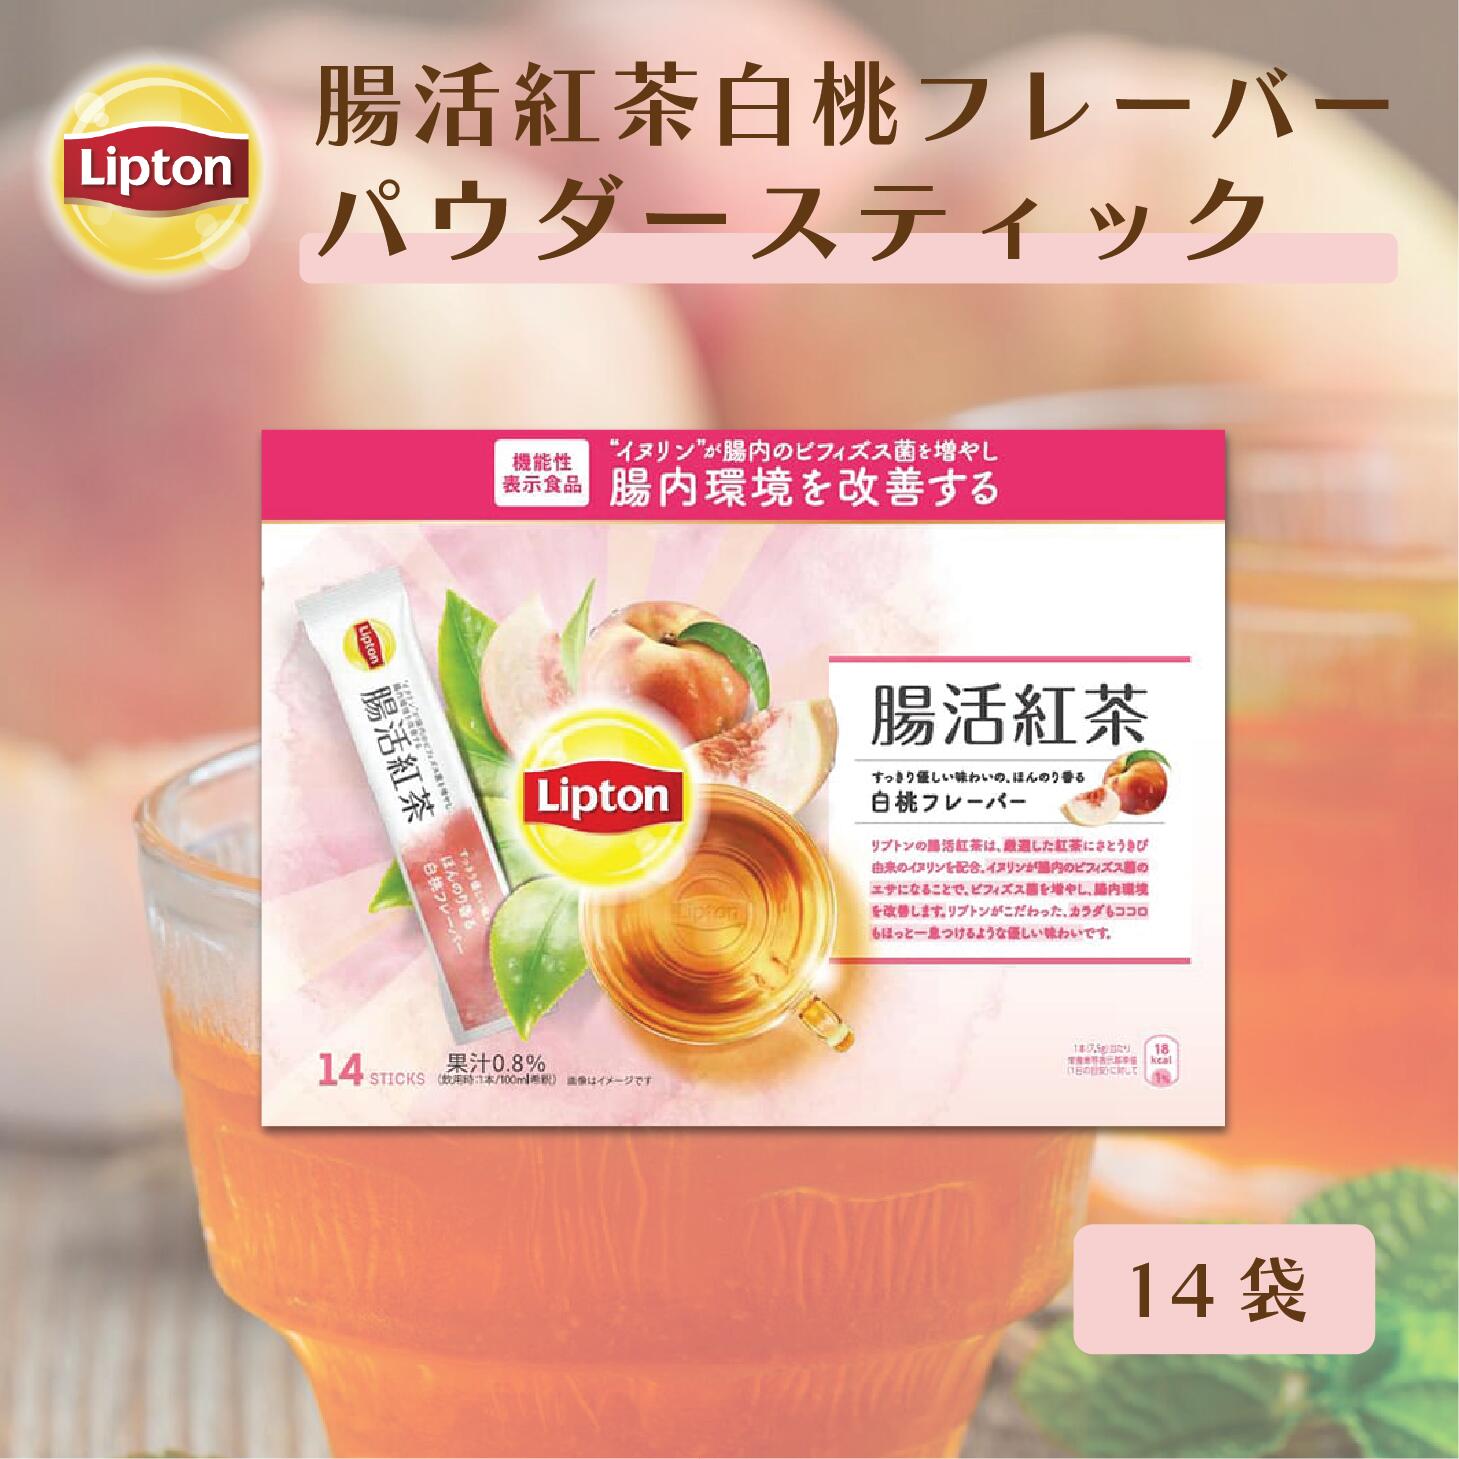 リプトン 紅茶 ブランド 機能性表示食品 腸活紅茶 白桃フレーバー パウダースティック 14袋 Lipton